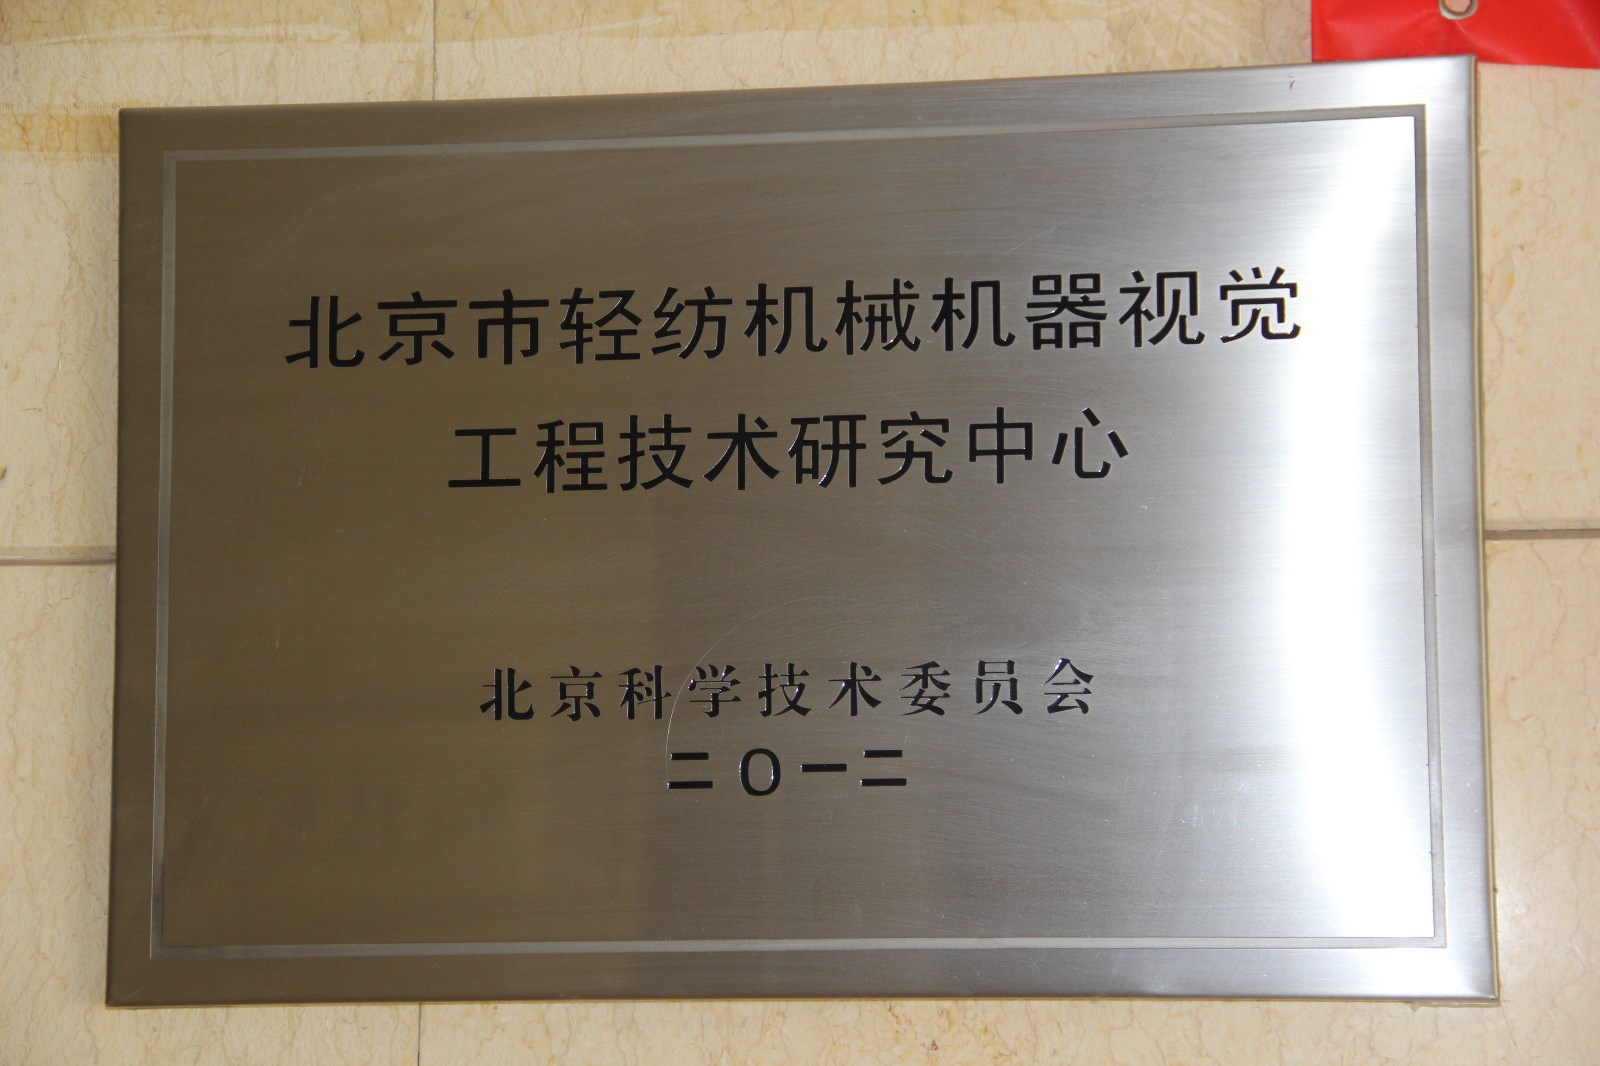 北京市轻纺机械机器视觉工程技术研究中心 .JPG